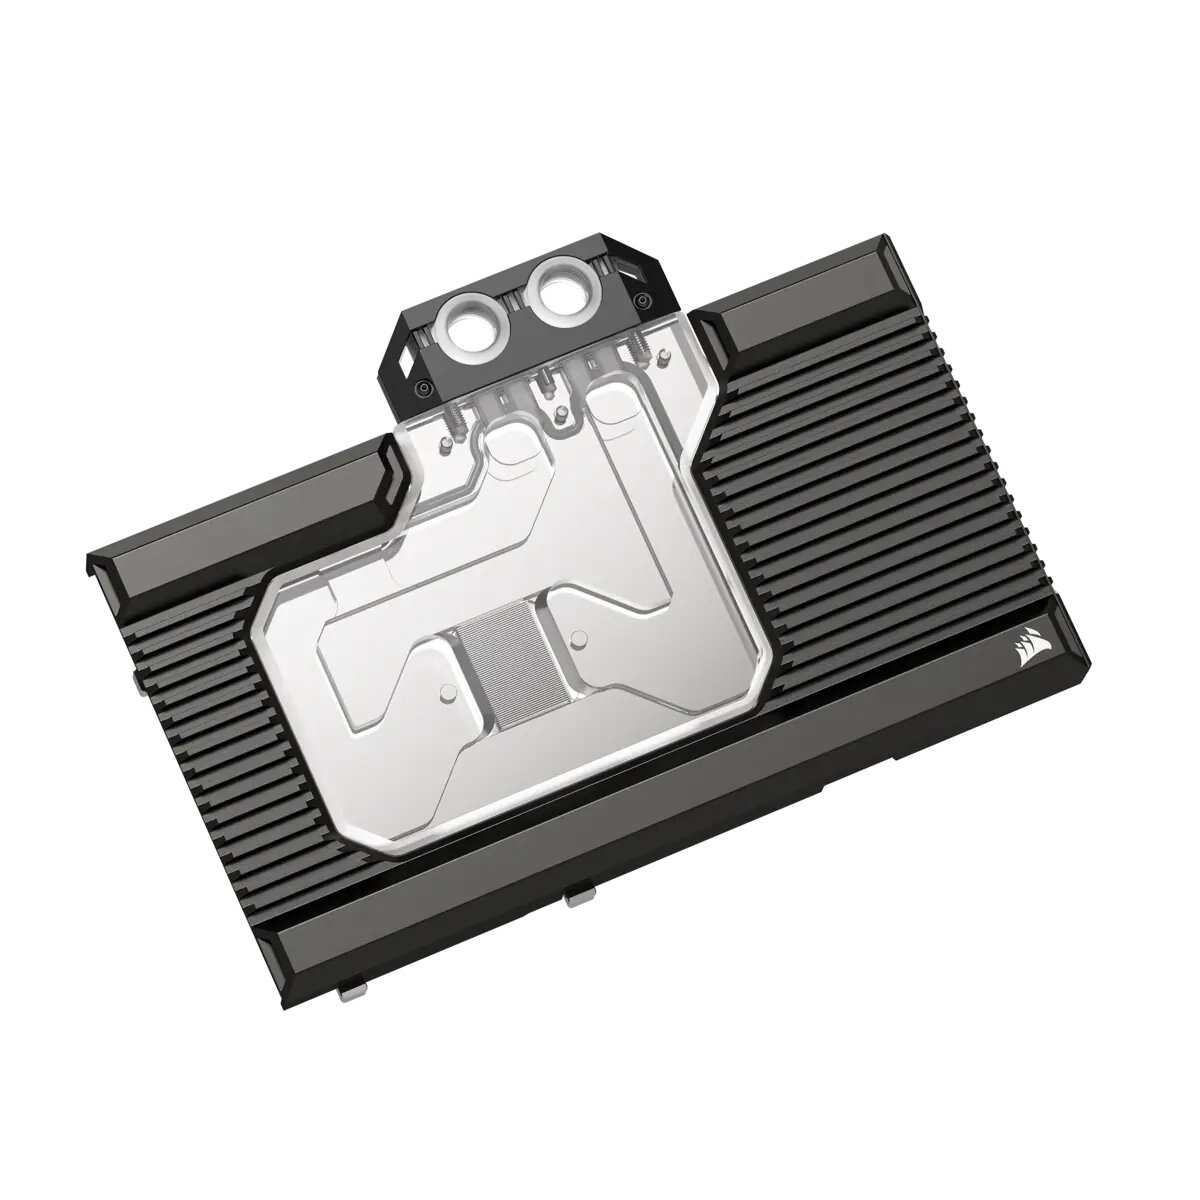 Ventola per PC Corsair Hydro CX-9020017-WW sistema di raffreddamento computer Scheda grafica Dissipatore calore/Radiatore Nero 1 pz [CX-9020017-WW]